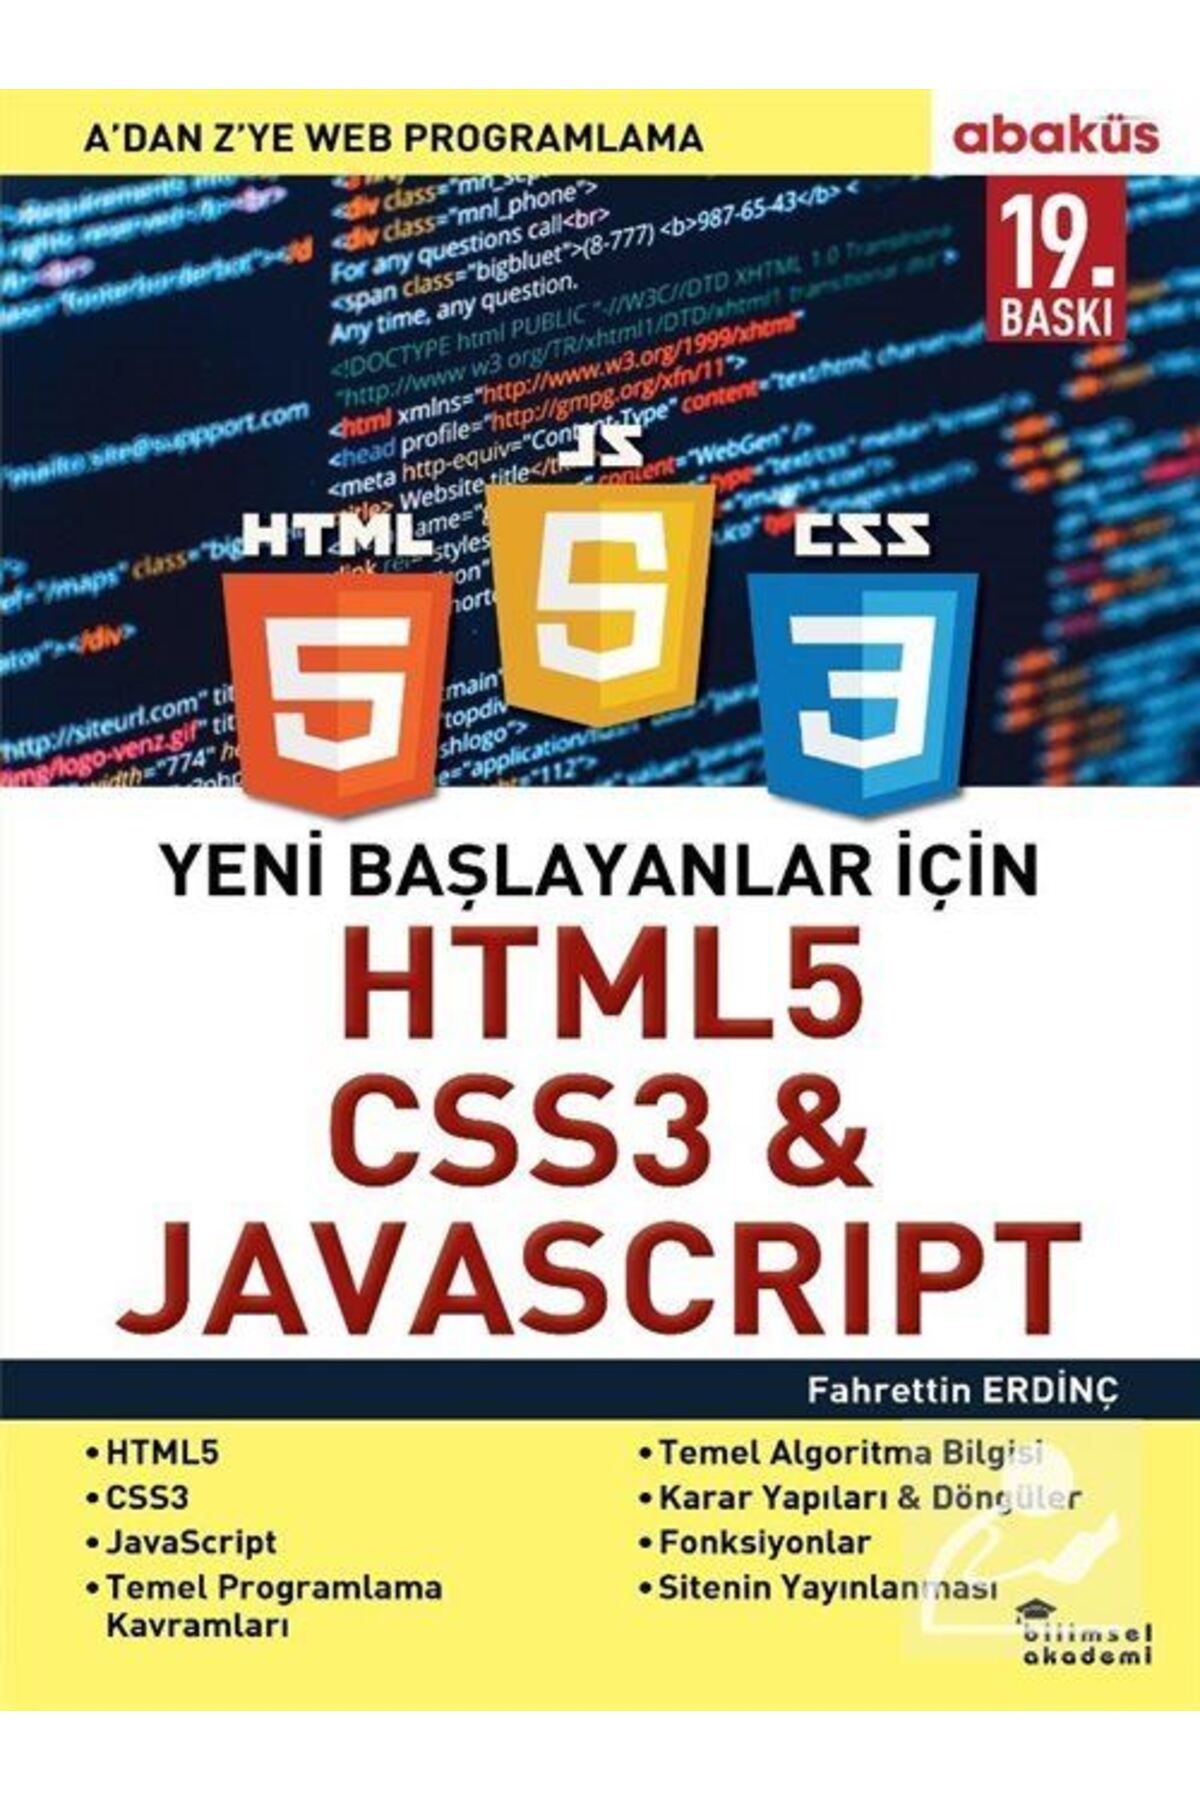 Abaküs Yayınları Yeni Başlayanlar I?çin Html5, Css3 Javascript & A 'dan Z'ye Web Programlama